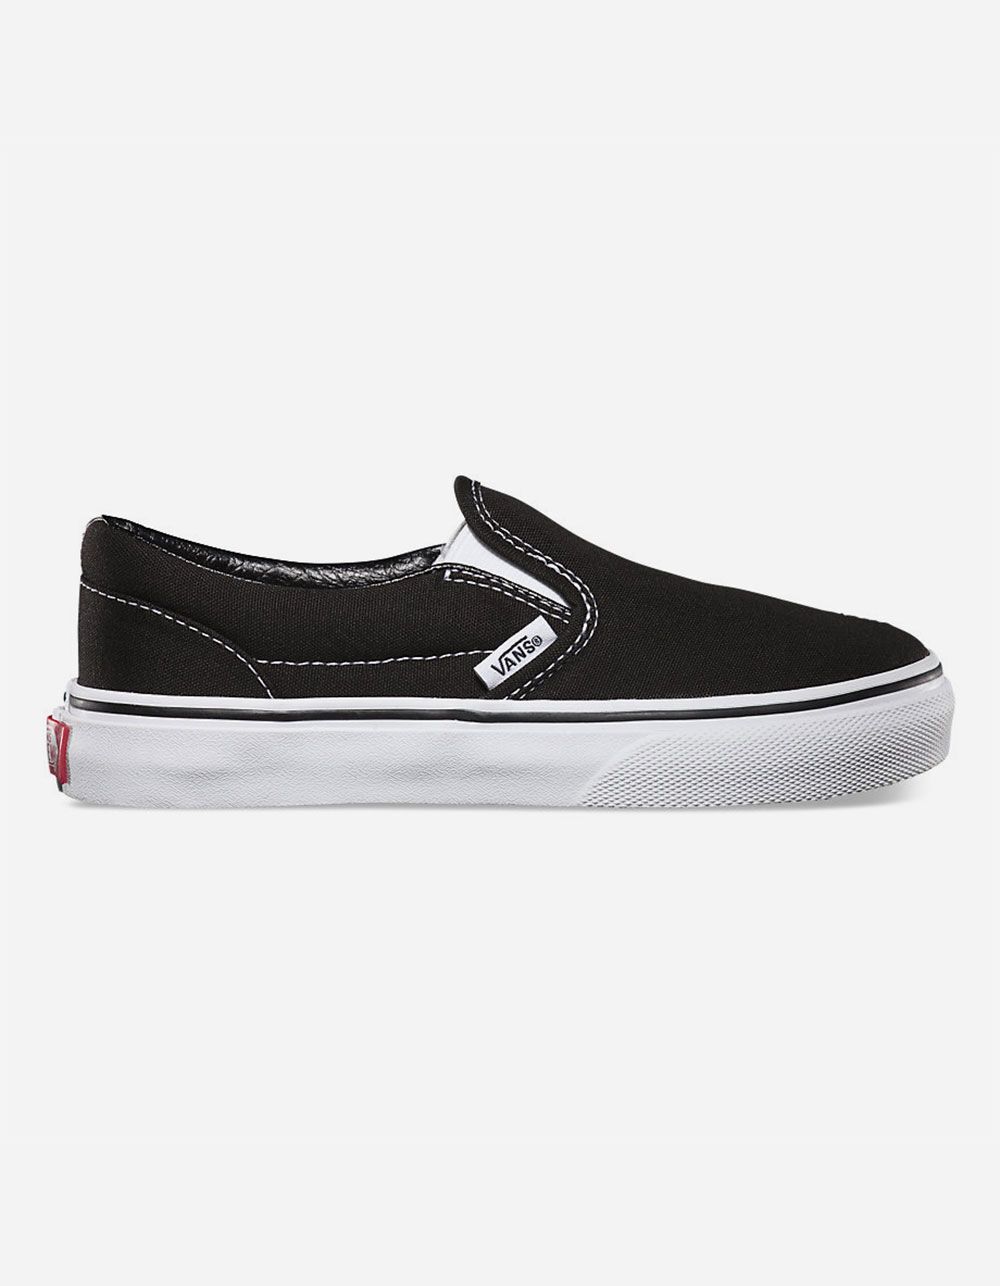 VANS Classic Slip-On Black & White Kids Shoes - BLACK | Tillys